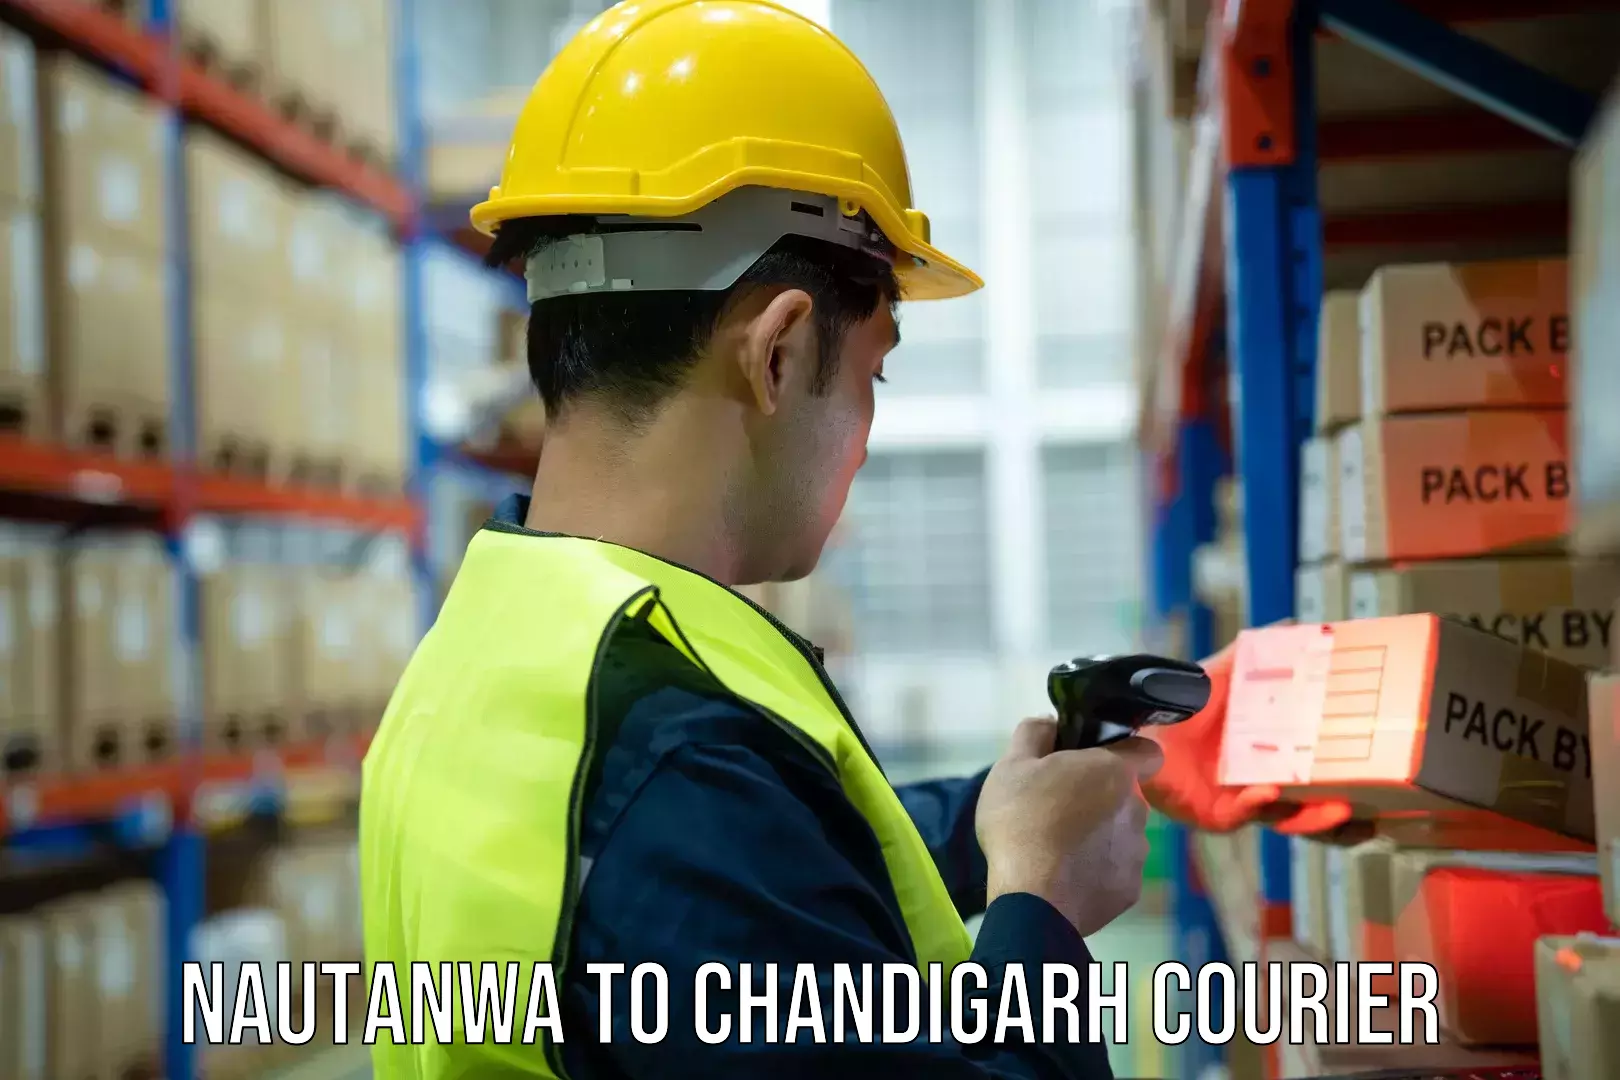 Courier insurance Nautanwa to Chandigarh